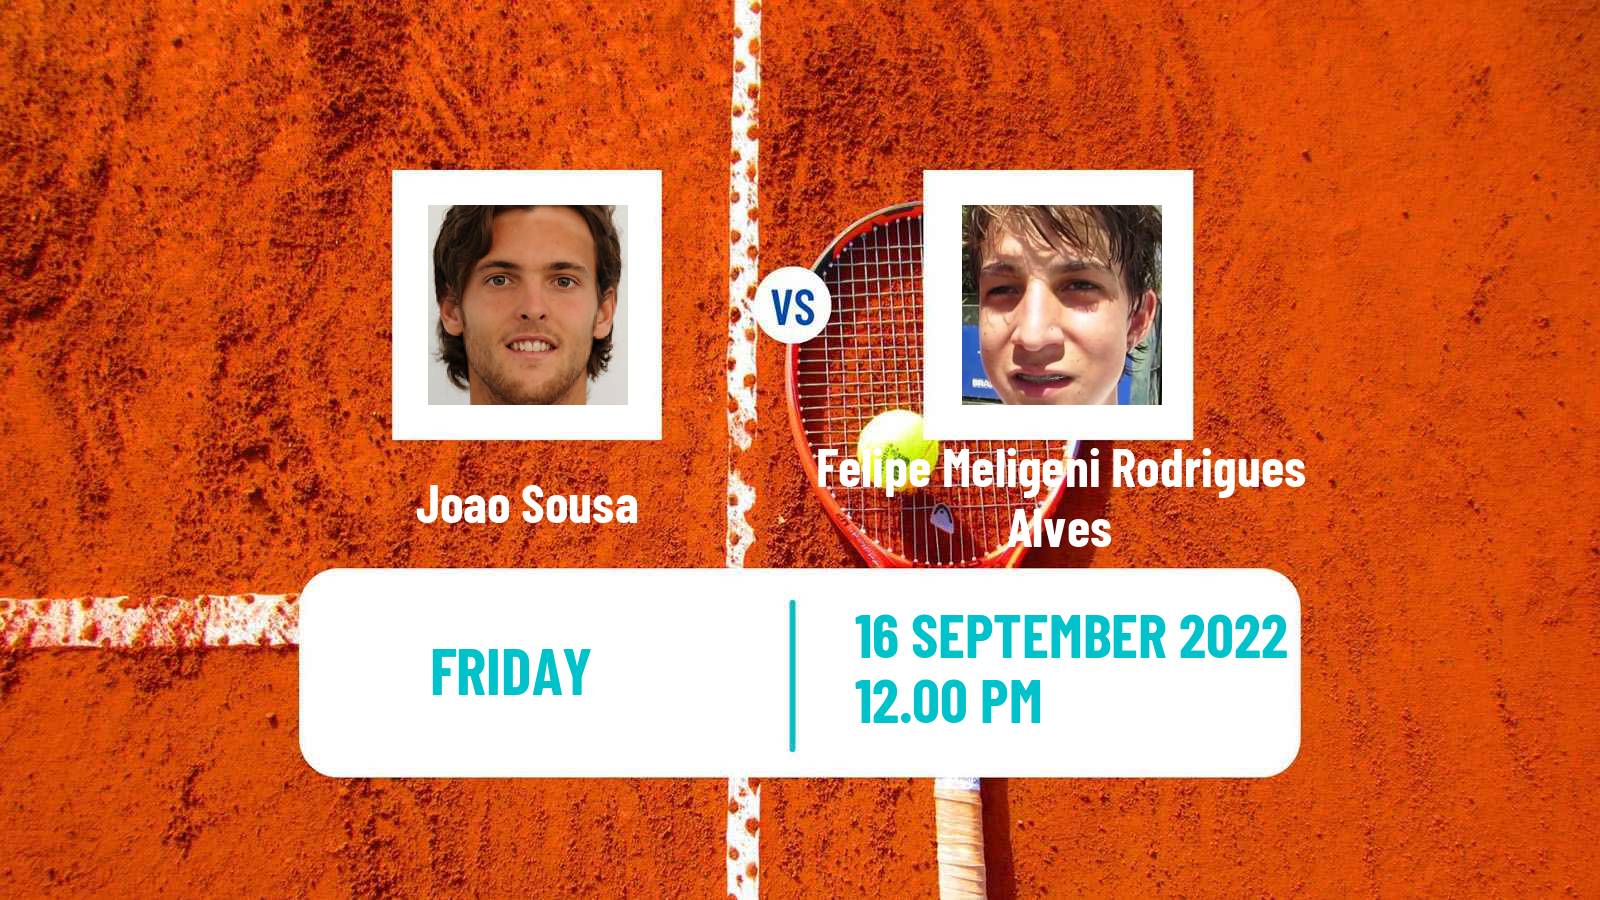 Tennis Davis Cup World Group I Joao Sousa - Felipe Meligeni Rodrigues Alves